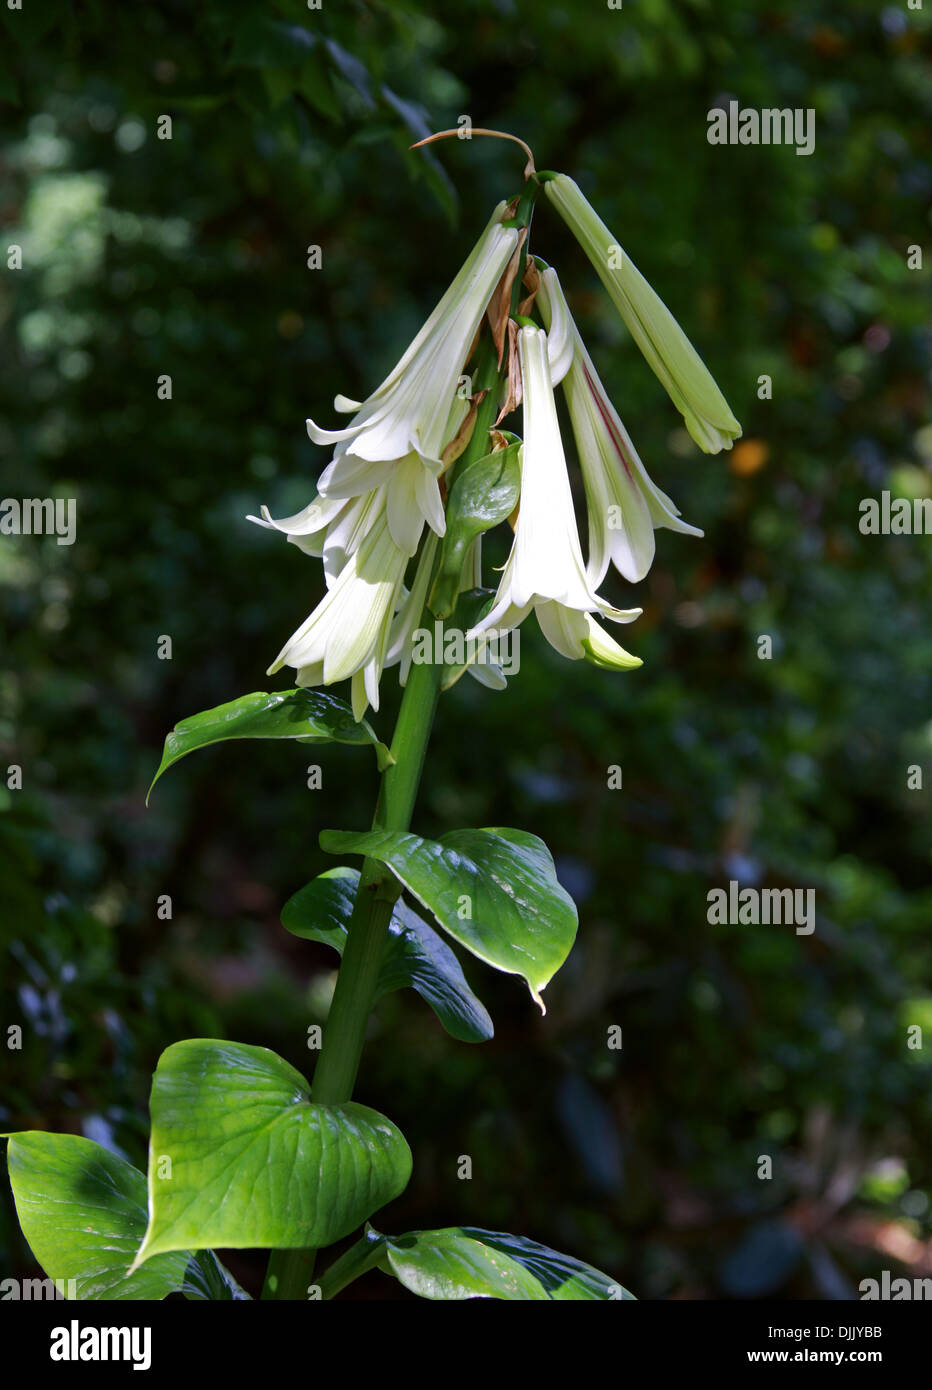 Giant Himalayan Lily, Cardiocrinum giganteum, Liliaceae. Les clairières dans l'Himalaya, au Japon et en Chine. Banque D'Images